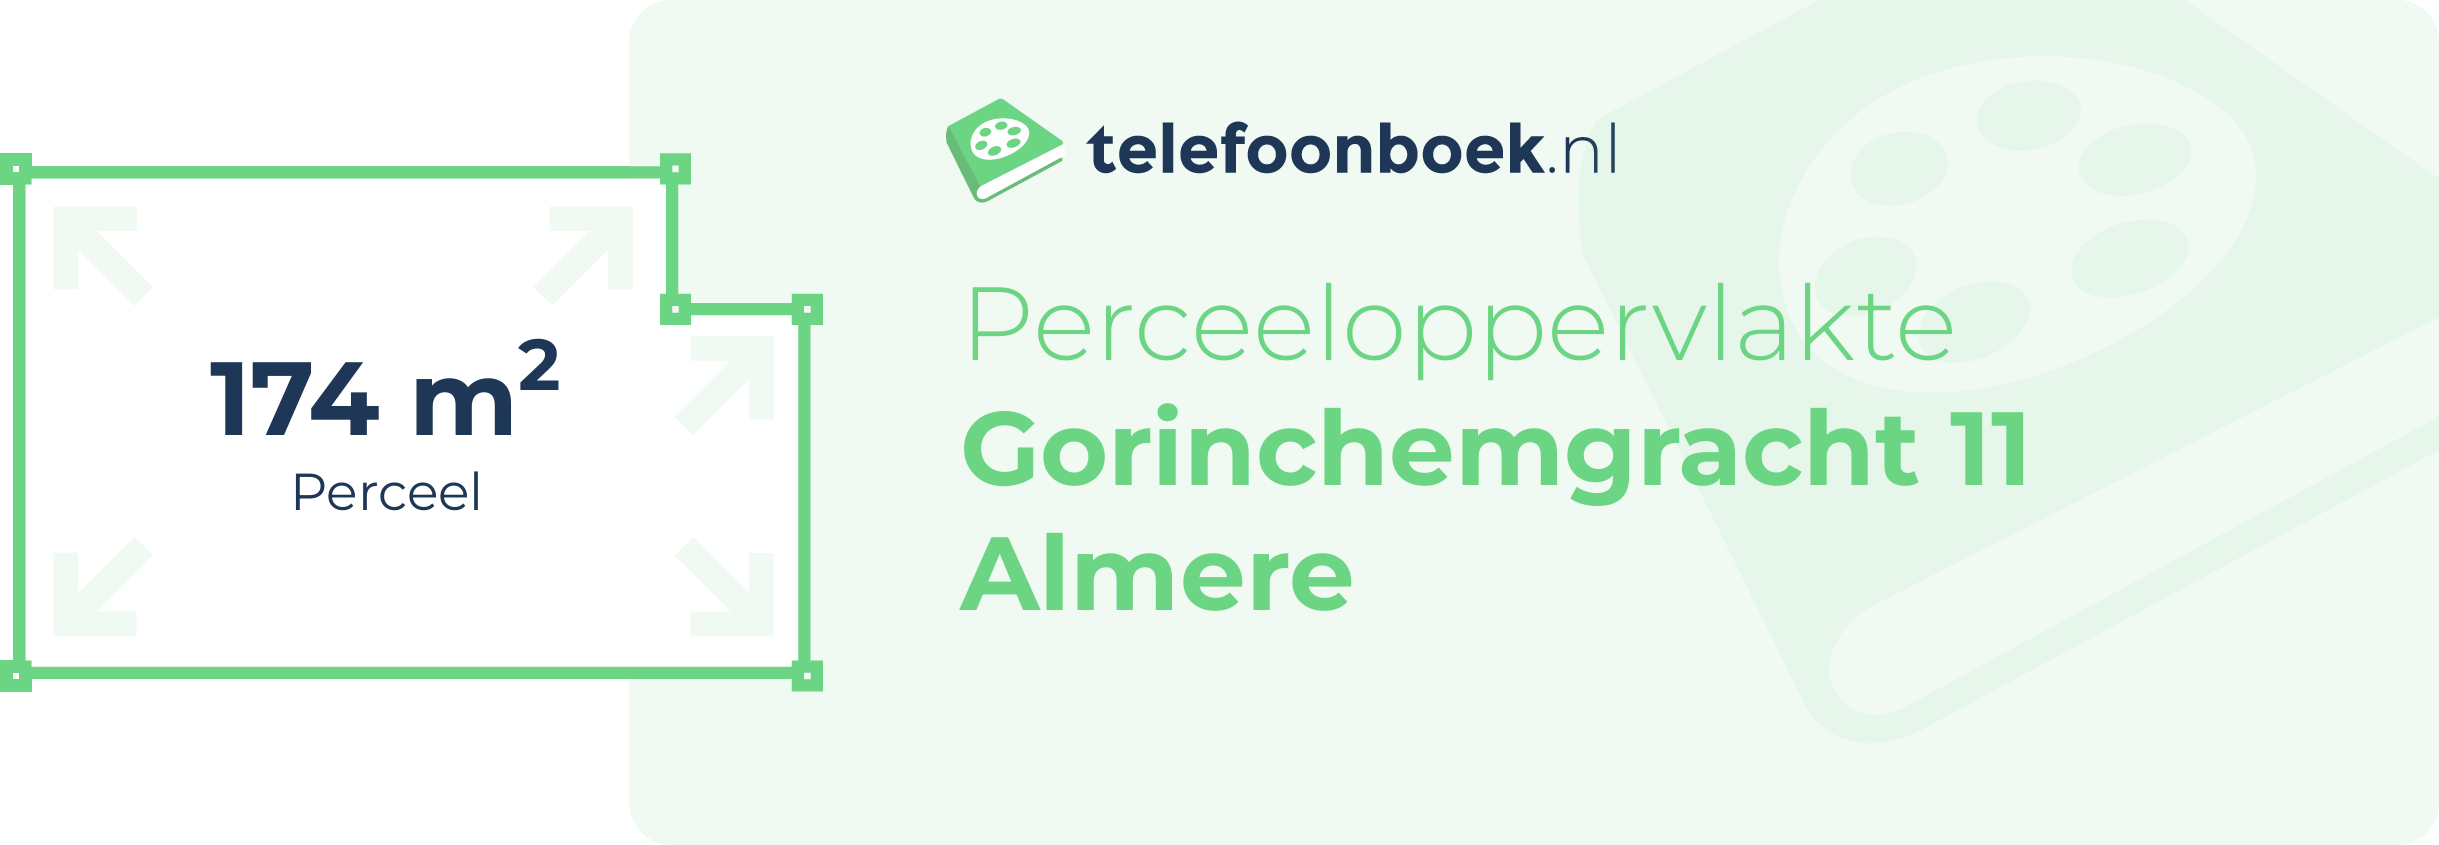 Perceeloppervlakte Gorinchemgracht 11 Almere